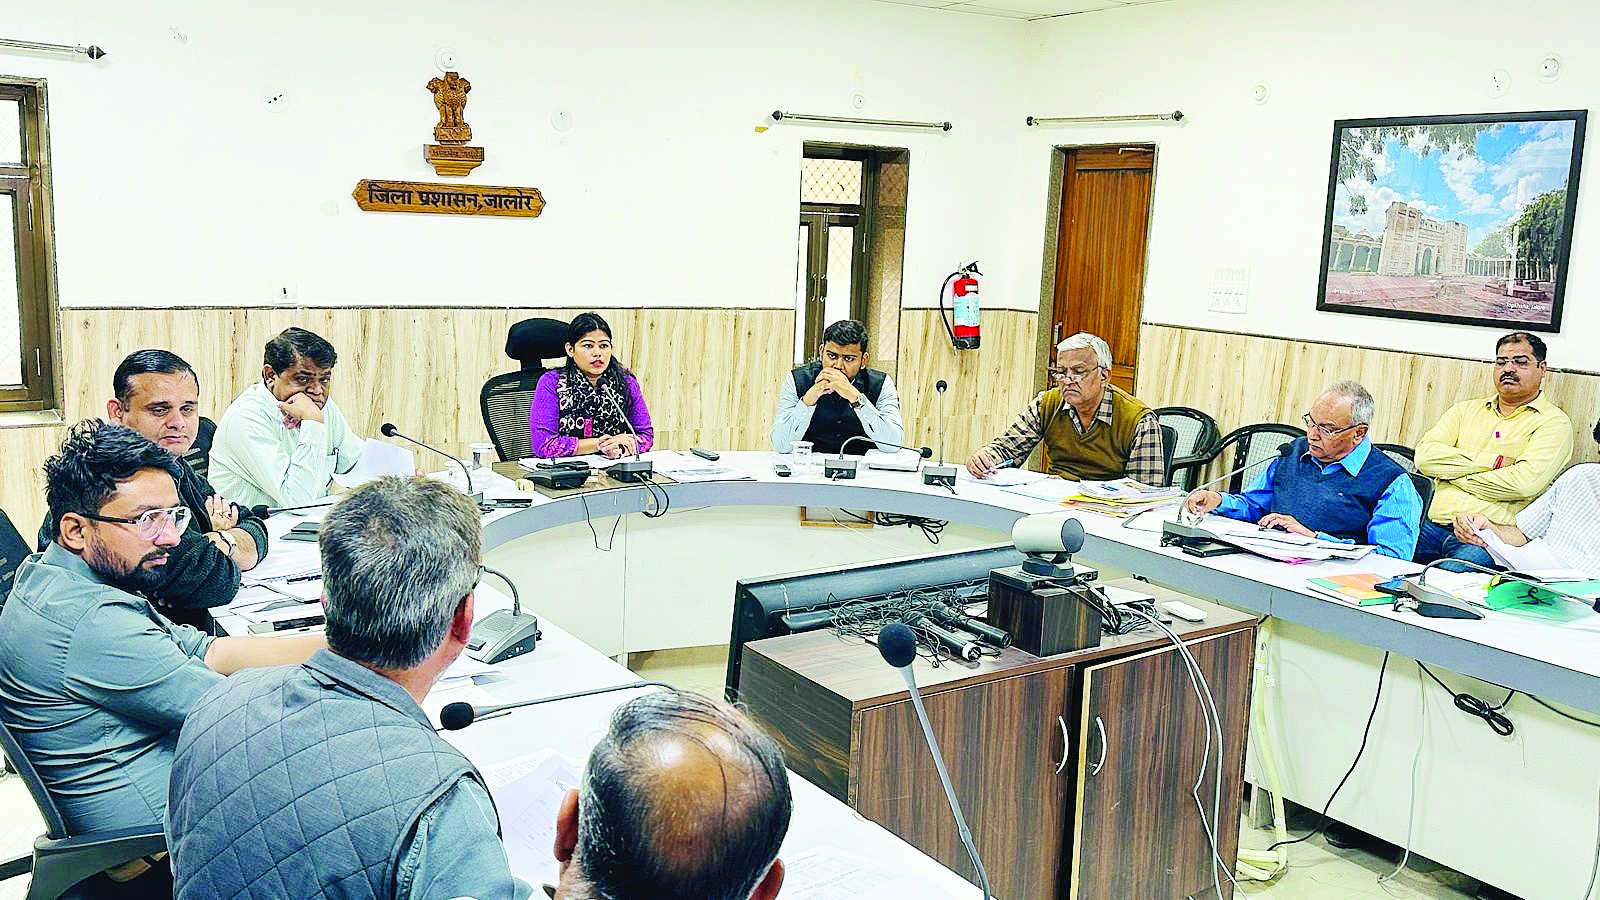 Rajasthan : जिला कलक्टर की अध्यक्षता में बीसूका व साप्ताहिक समीक्षा बैठक संपन्न, 100 दिन में लक्ष्य प्राप्त करें अधिकारी